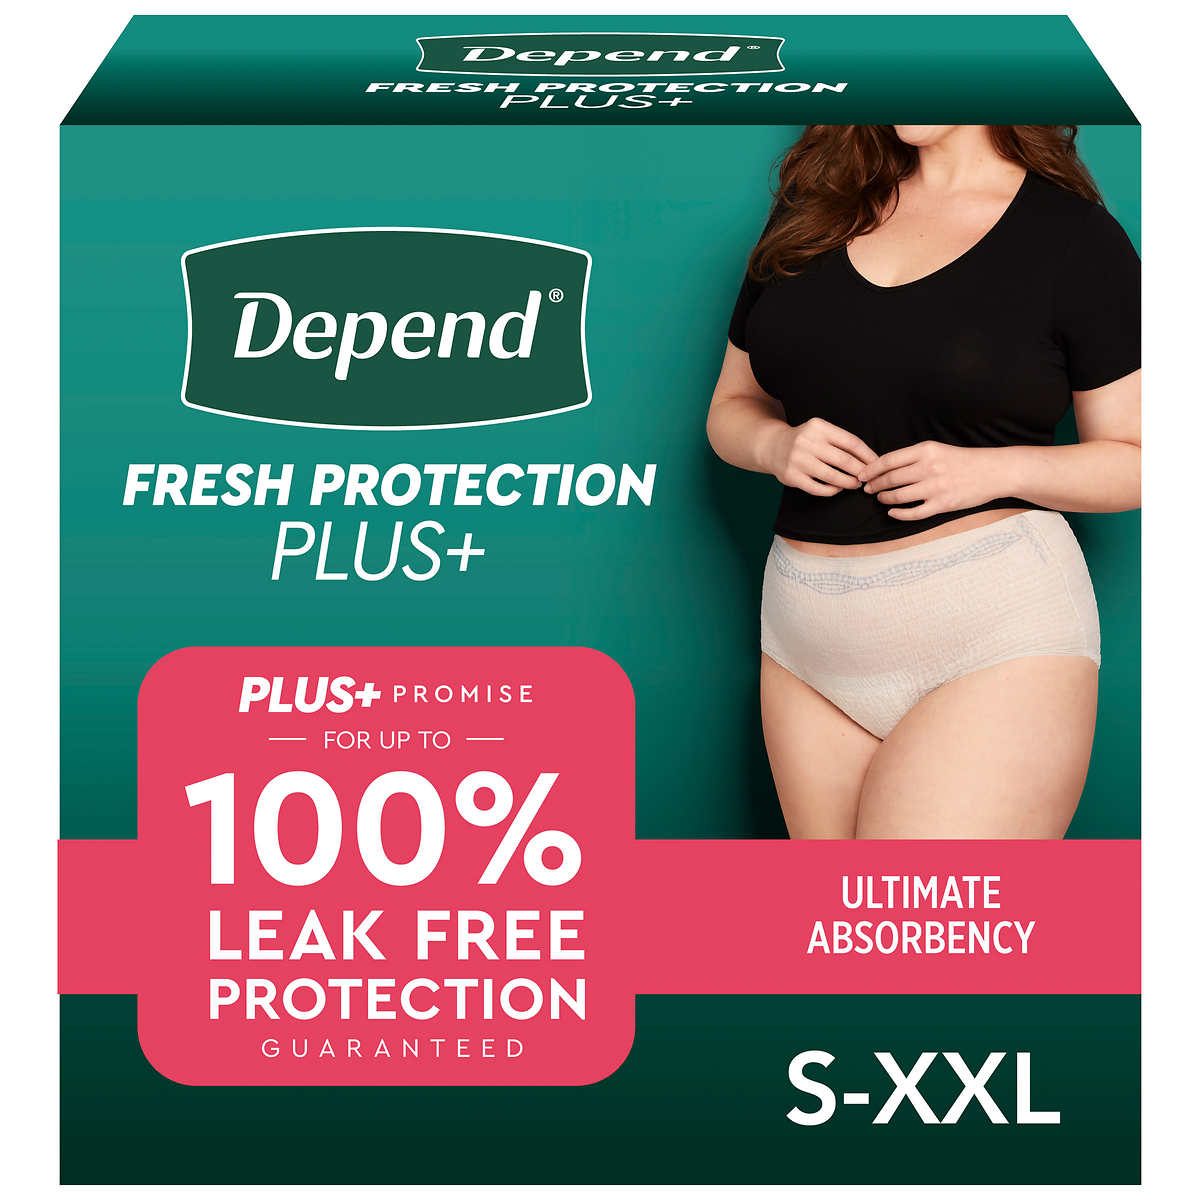 Depend Fit-Flex Underwear for Women Size Medium 88 ct